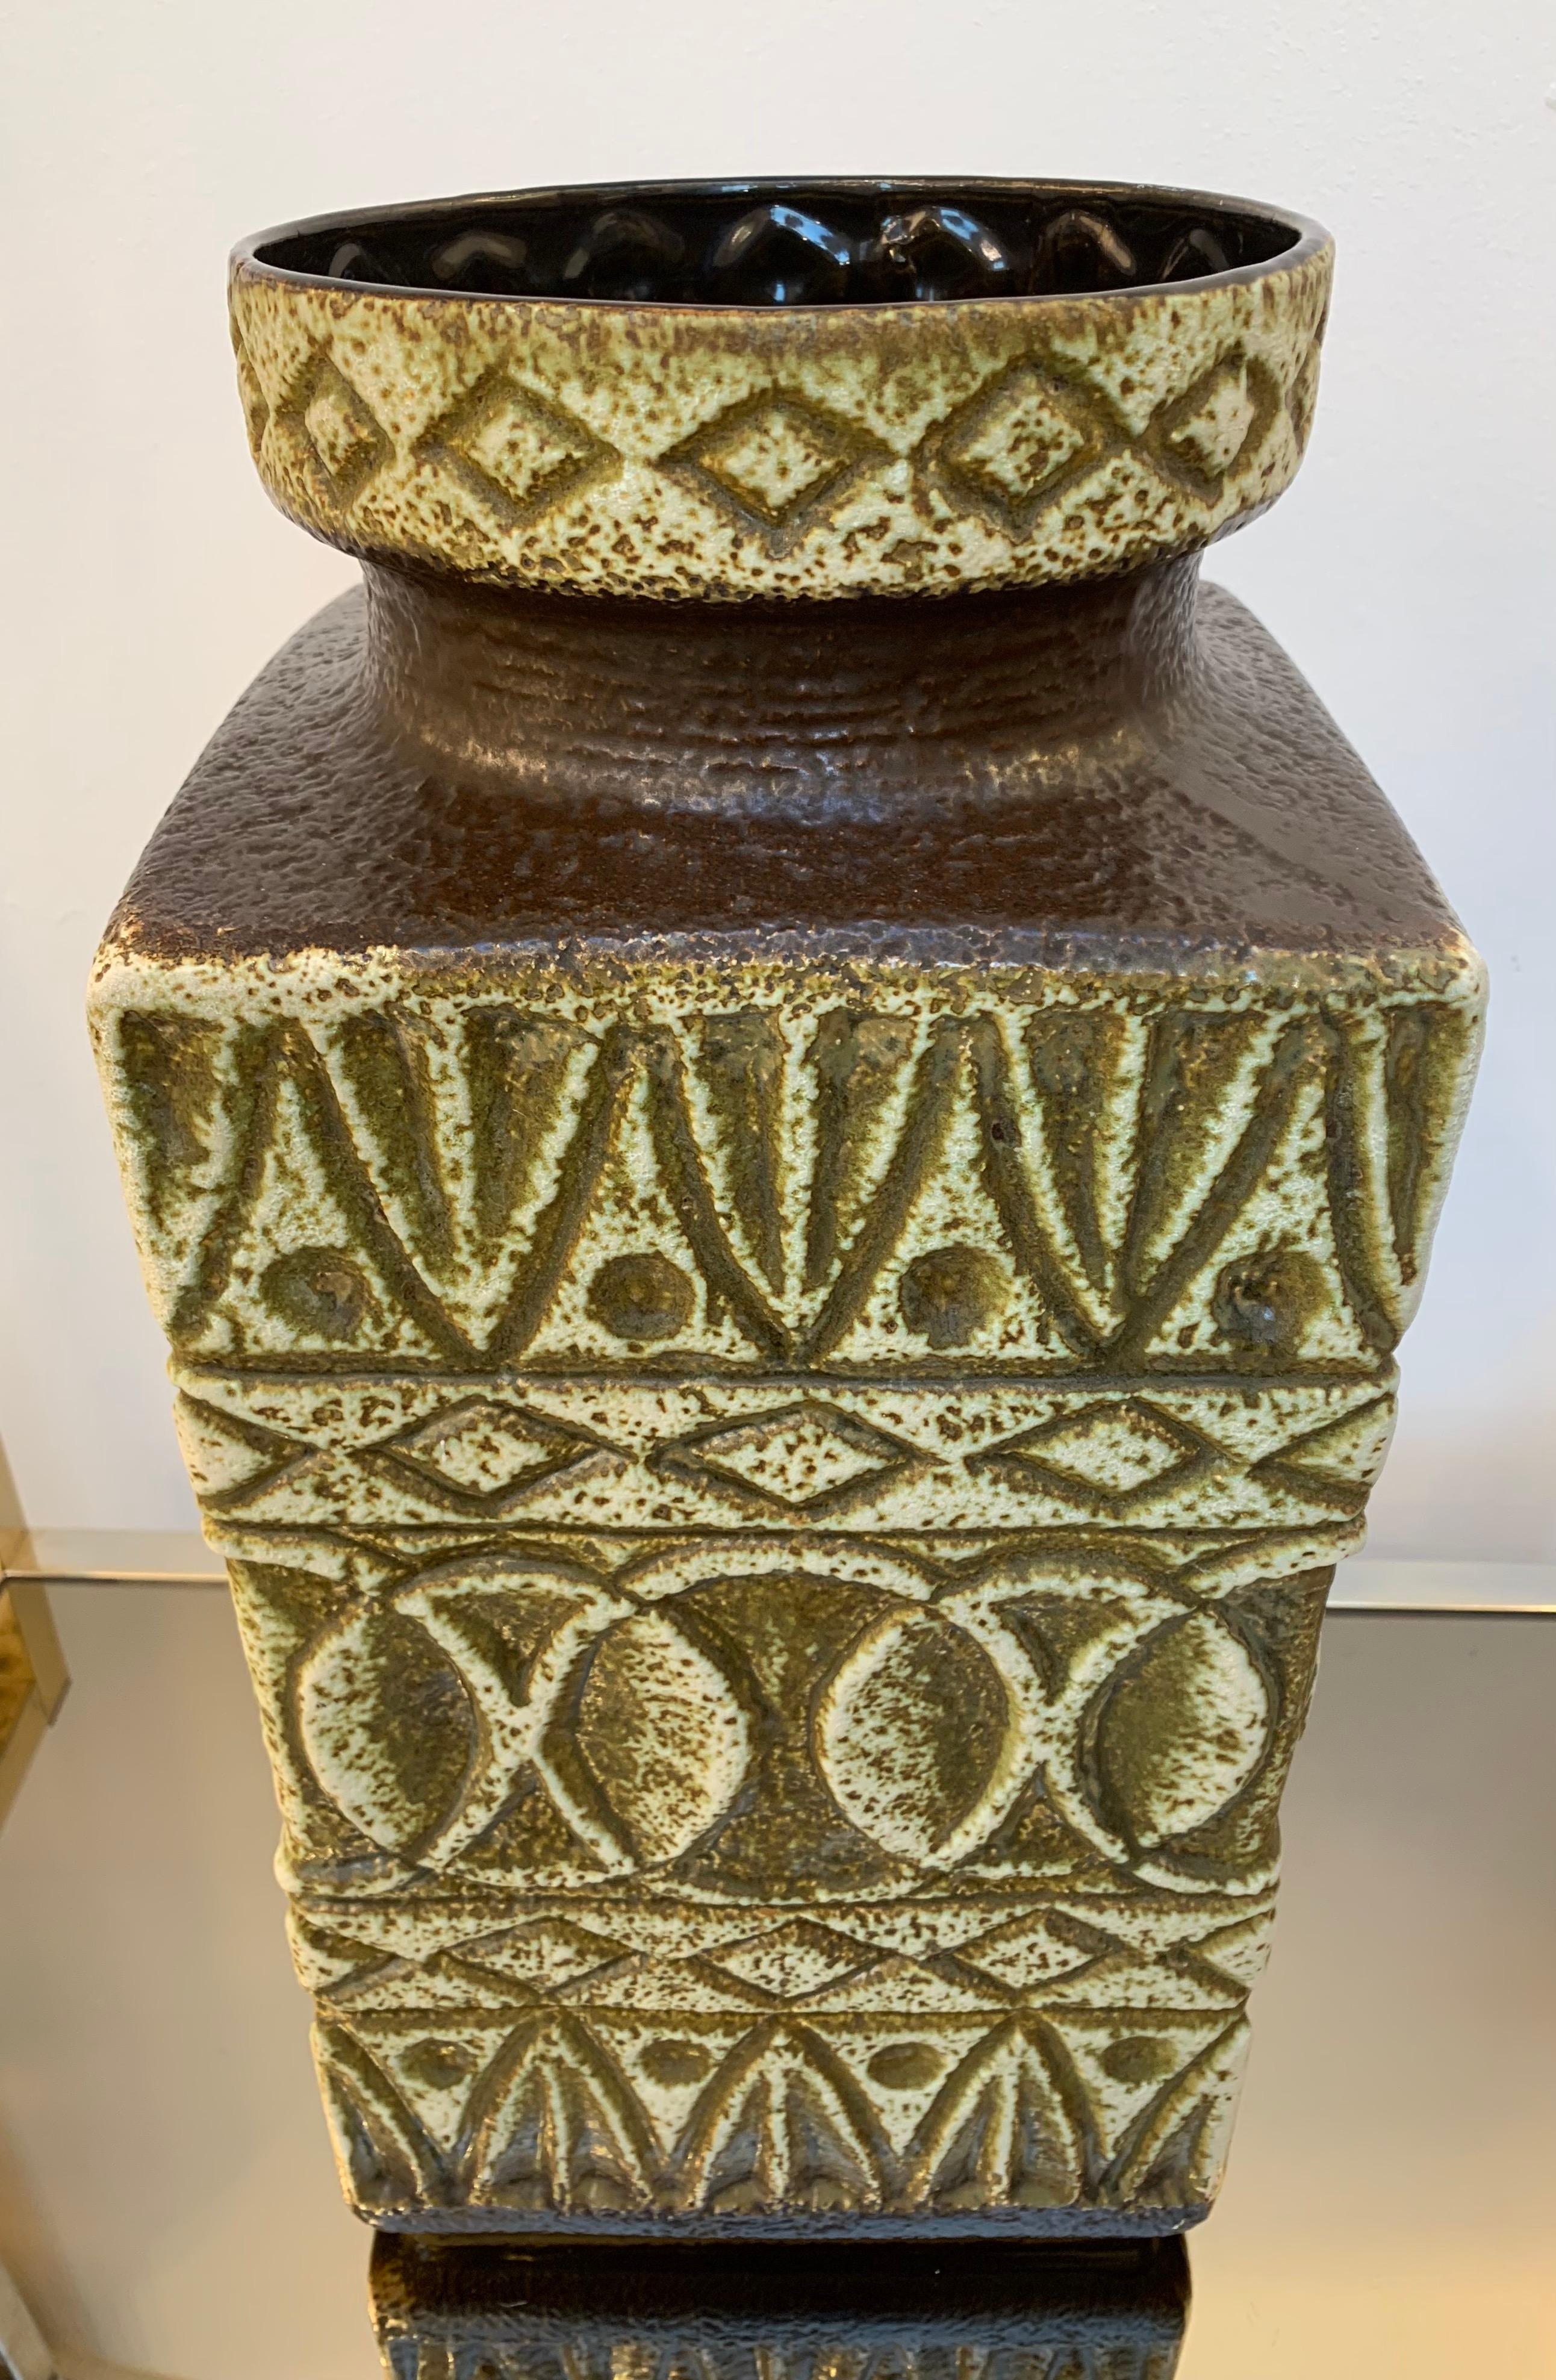 Abstrakte Vase aus deutscher Fat Lava Bay-Keramik von Bodo Mans 92 45, 1970er Jahre (20. Jahrhundert)